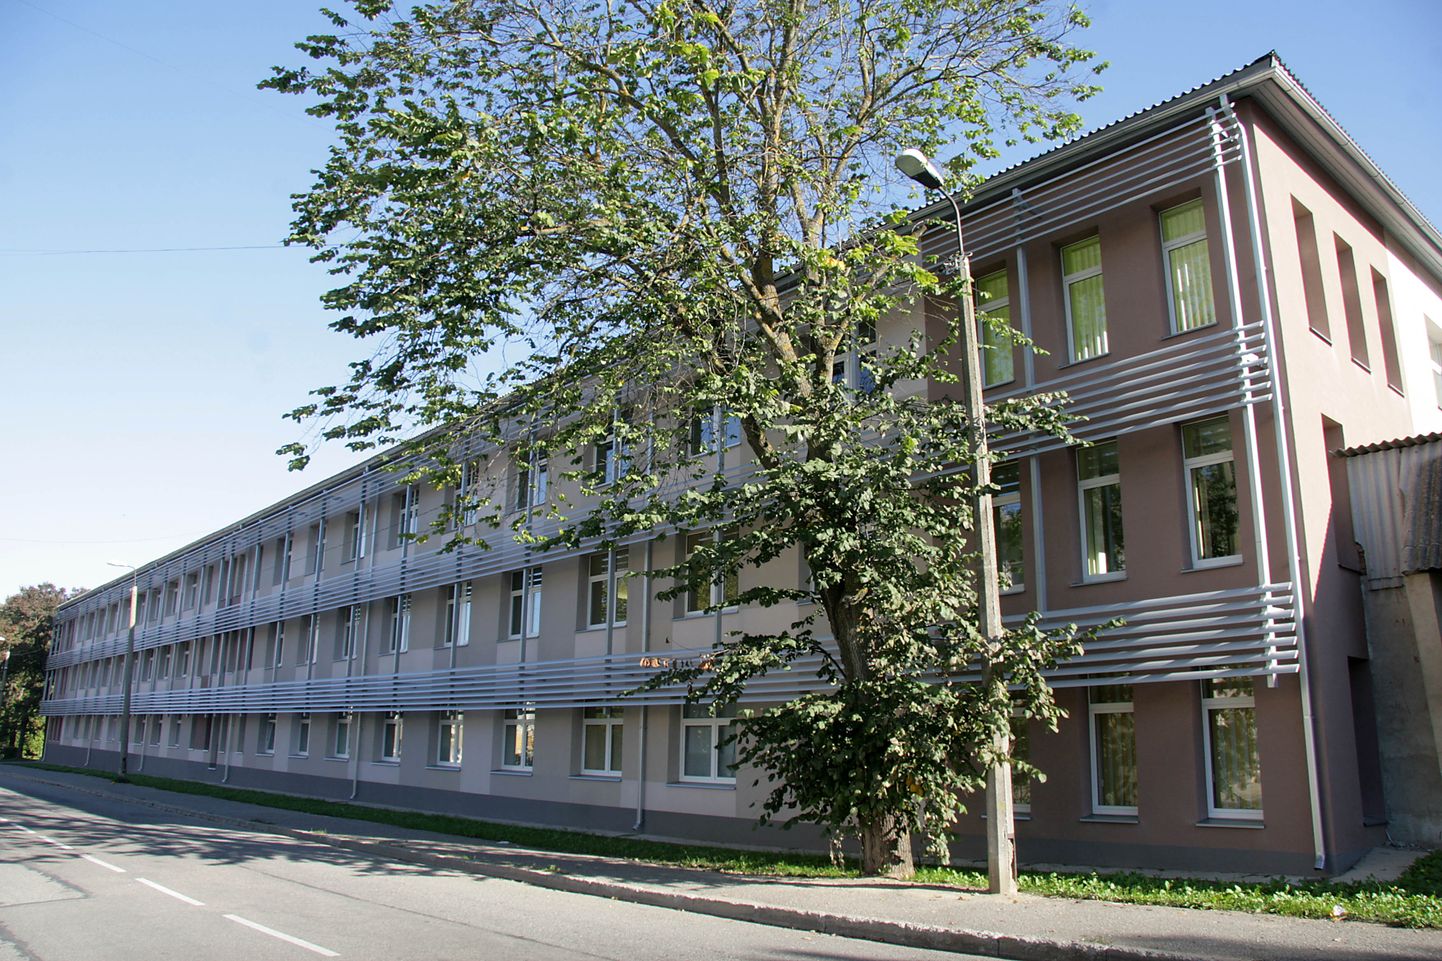 Клиника реабилитации и сестринского ухода Ида-Вируской центральной больницы находится в Ярвеской части города Кохтла-Ярве